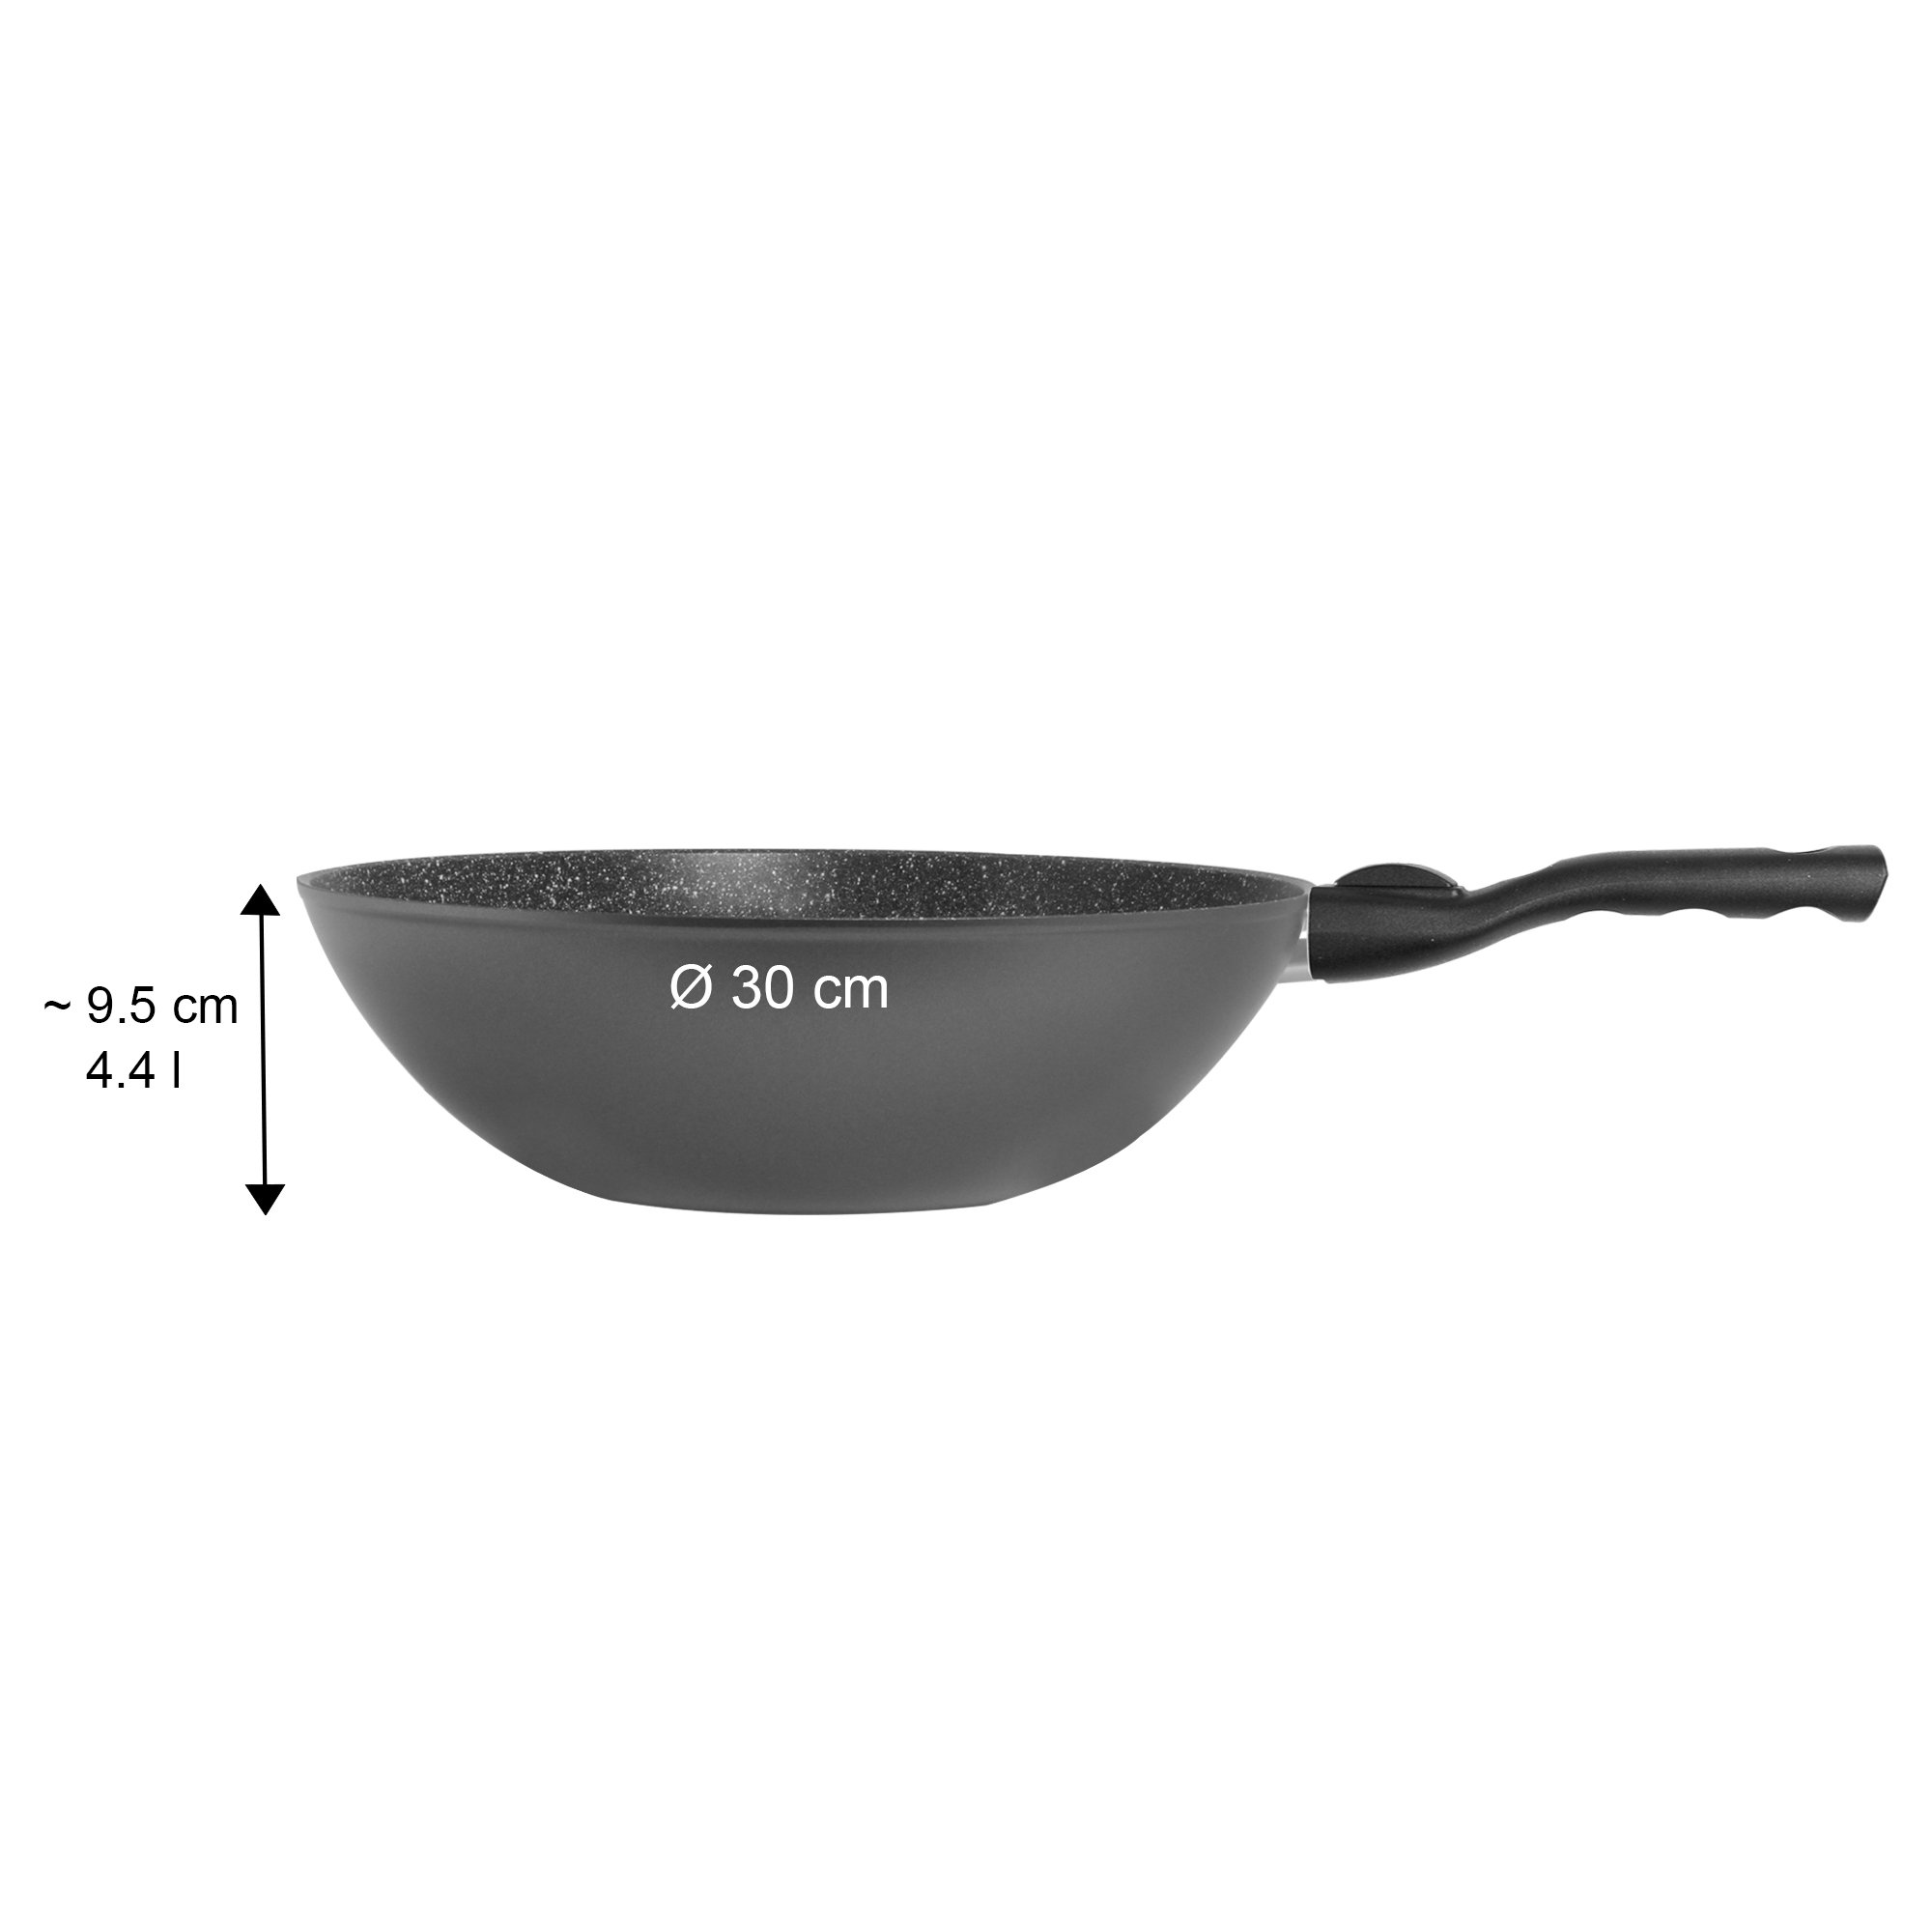 STONELINE® poêle wok 30 cm, Made in Germany, avec poignée amovible, convient pour l'induction